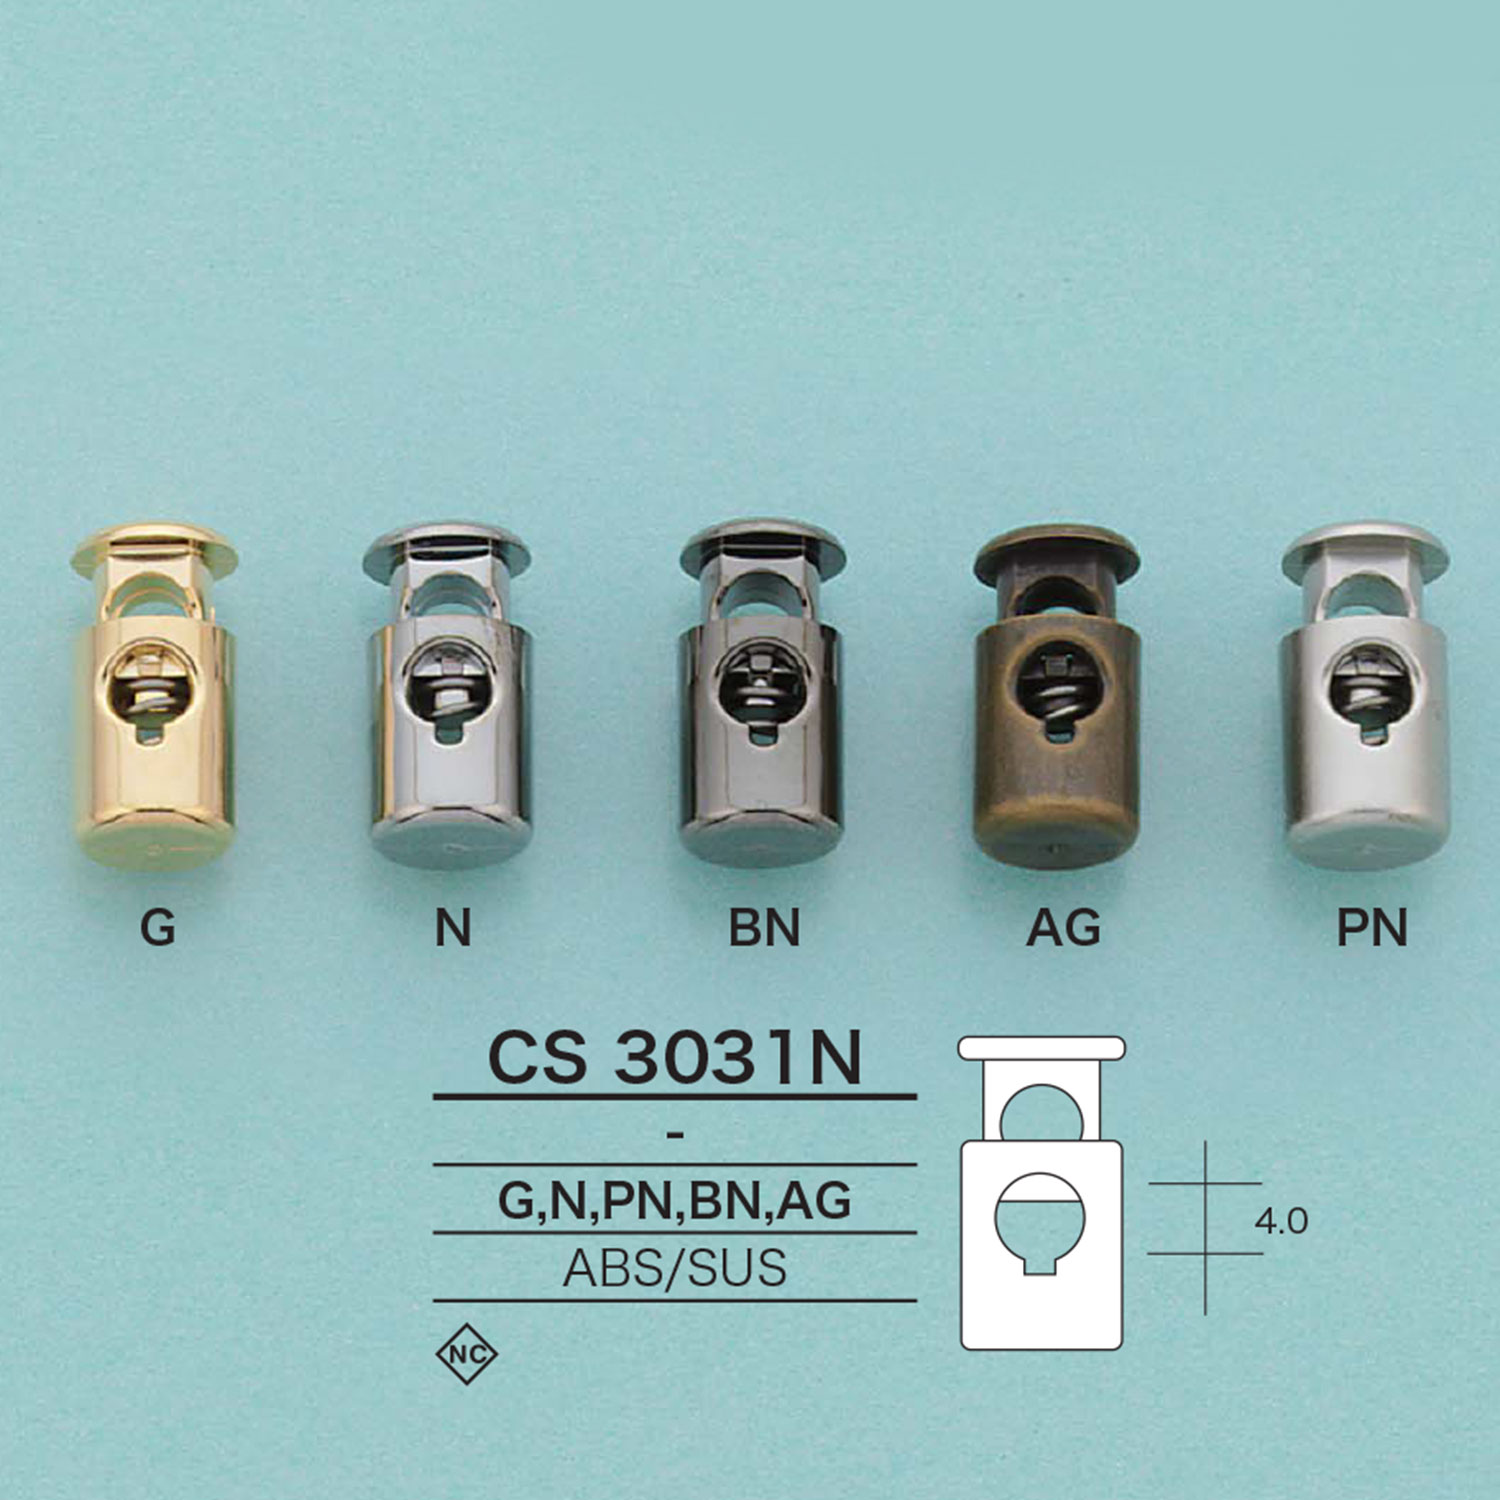 CS3031N 繩子鎖[扣和環] 愛麗絲鈕扣